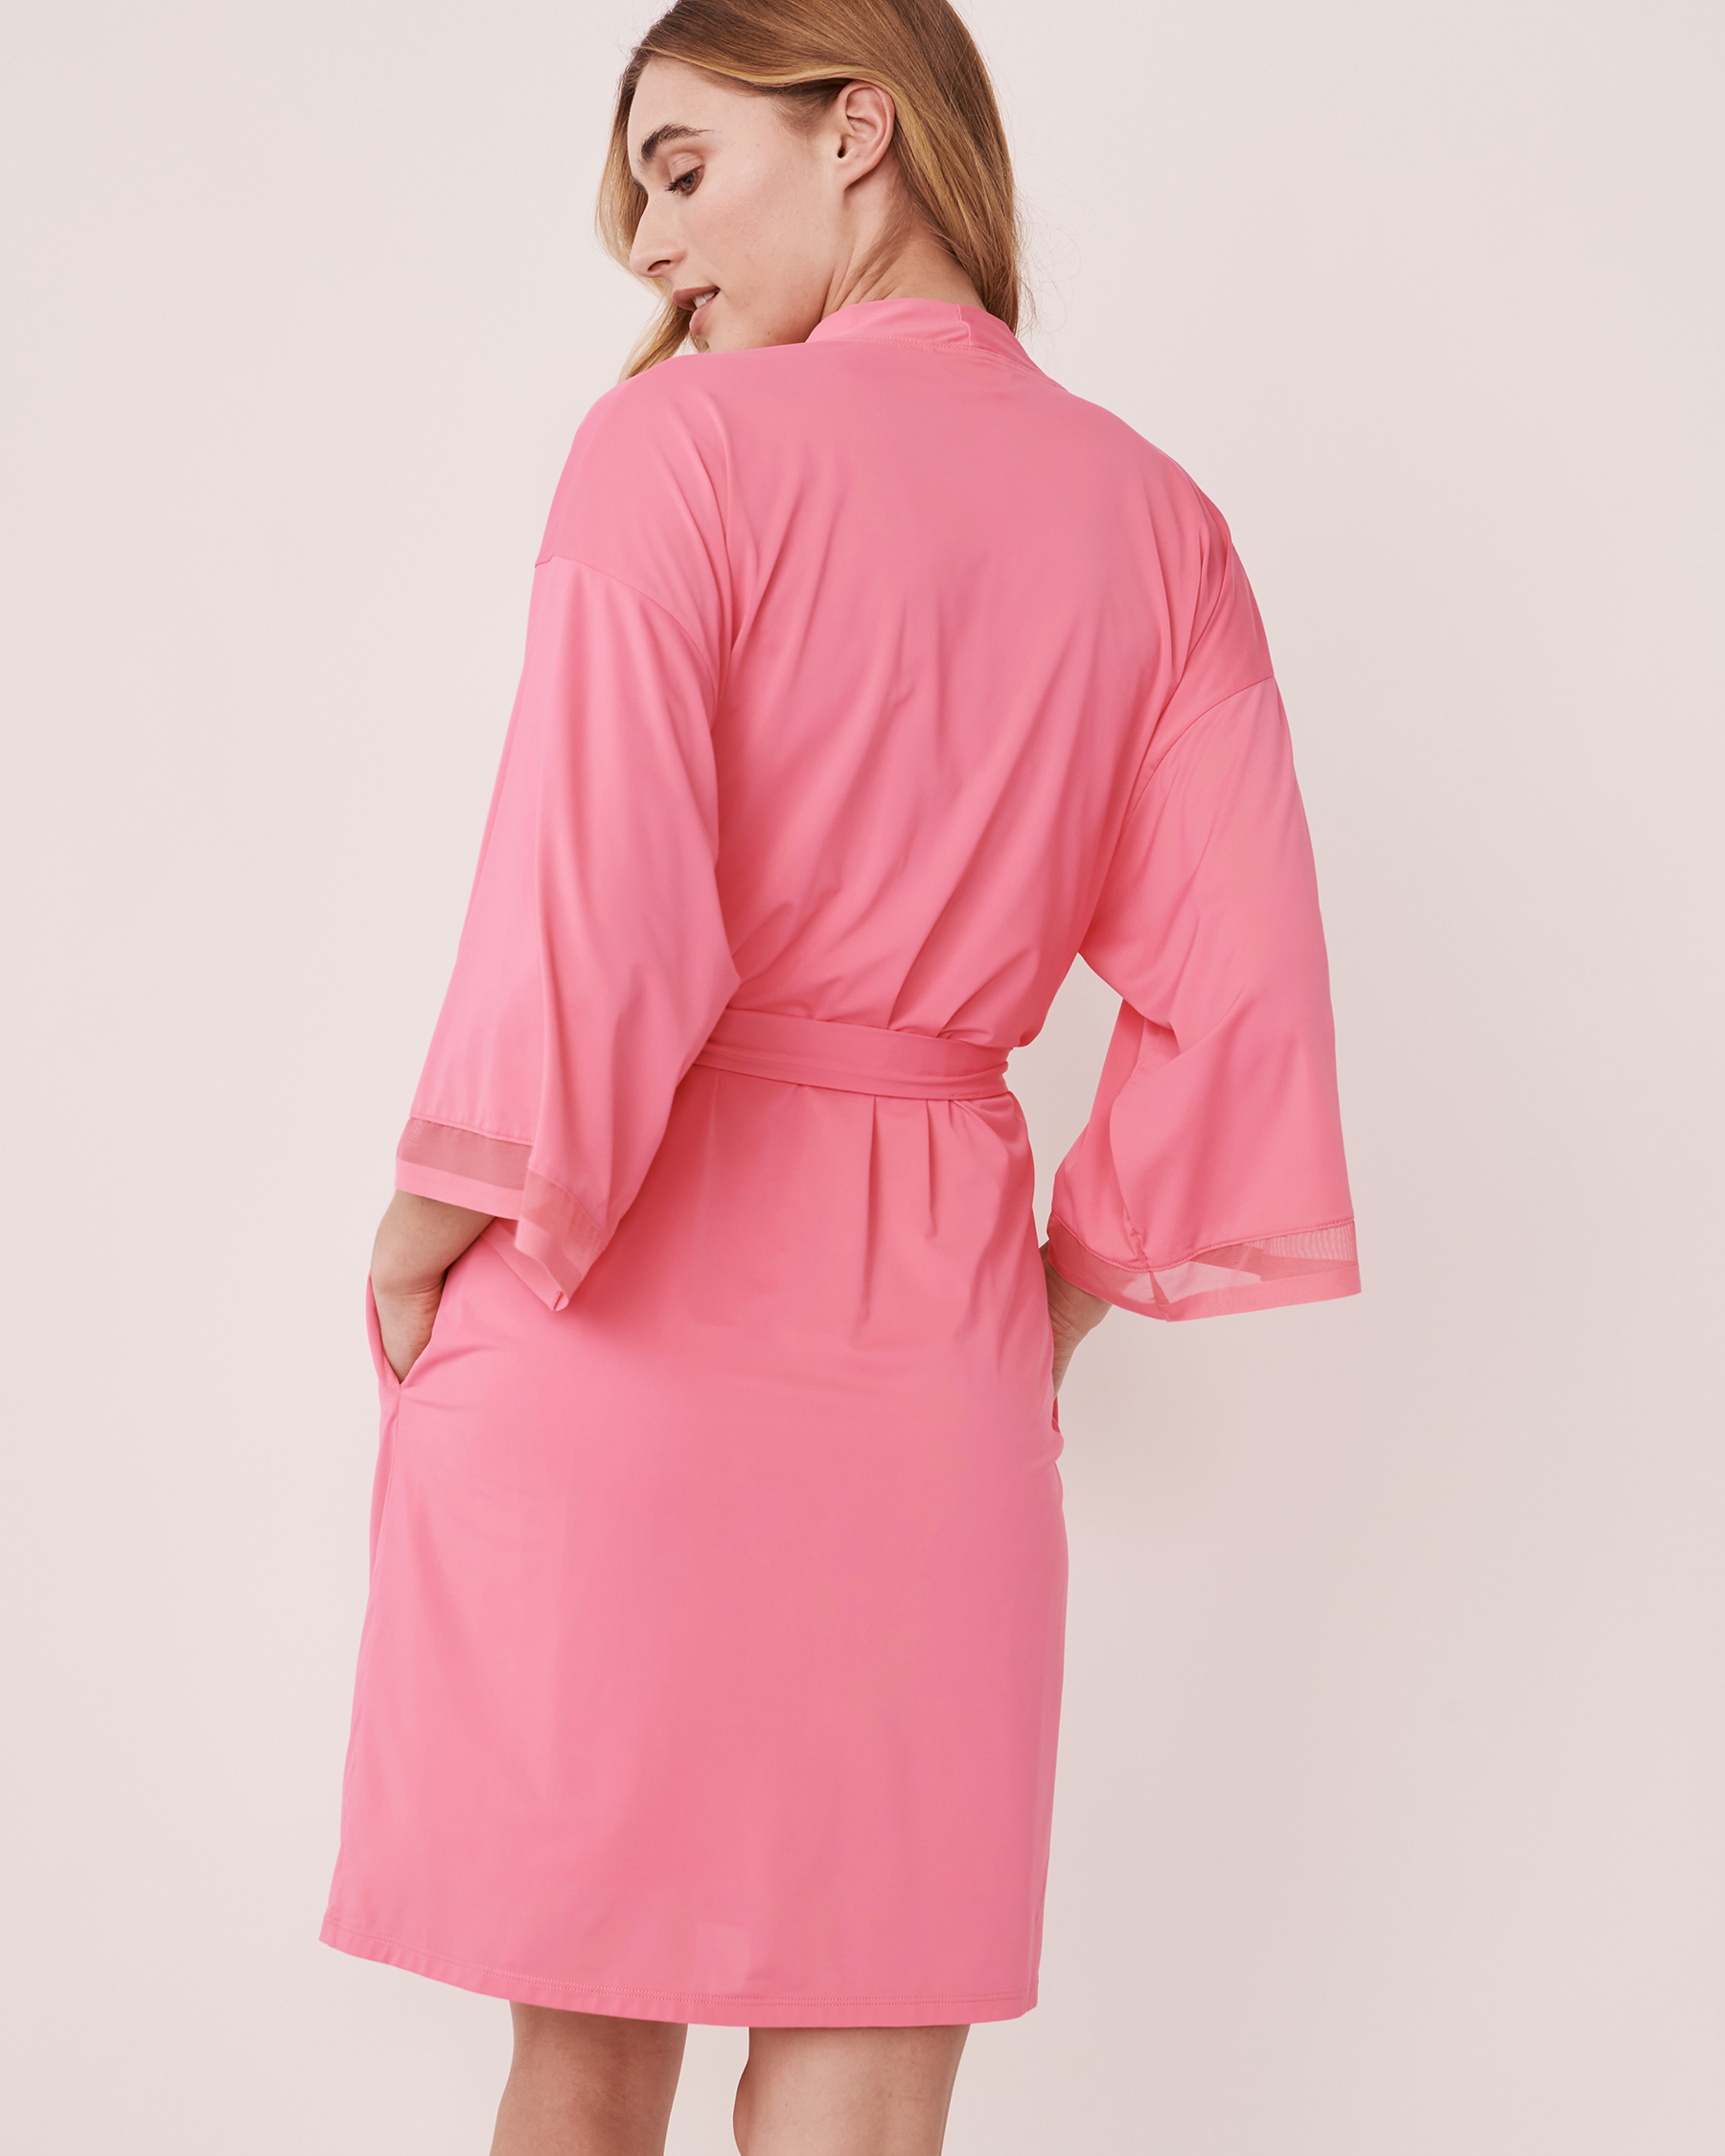 LA VIE EN ROSE Kimono détail de résille Rose bonbon 60600027 - Voir2